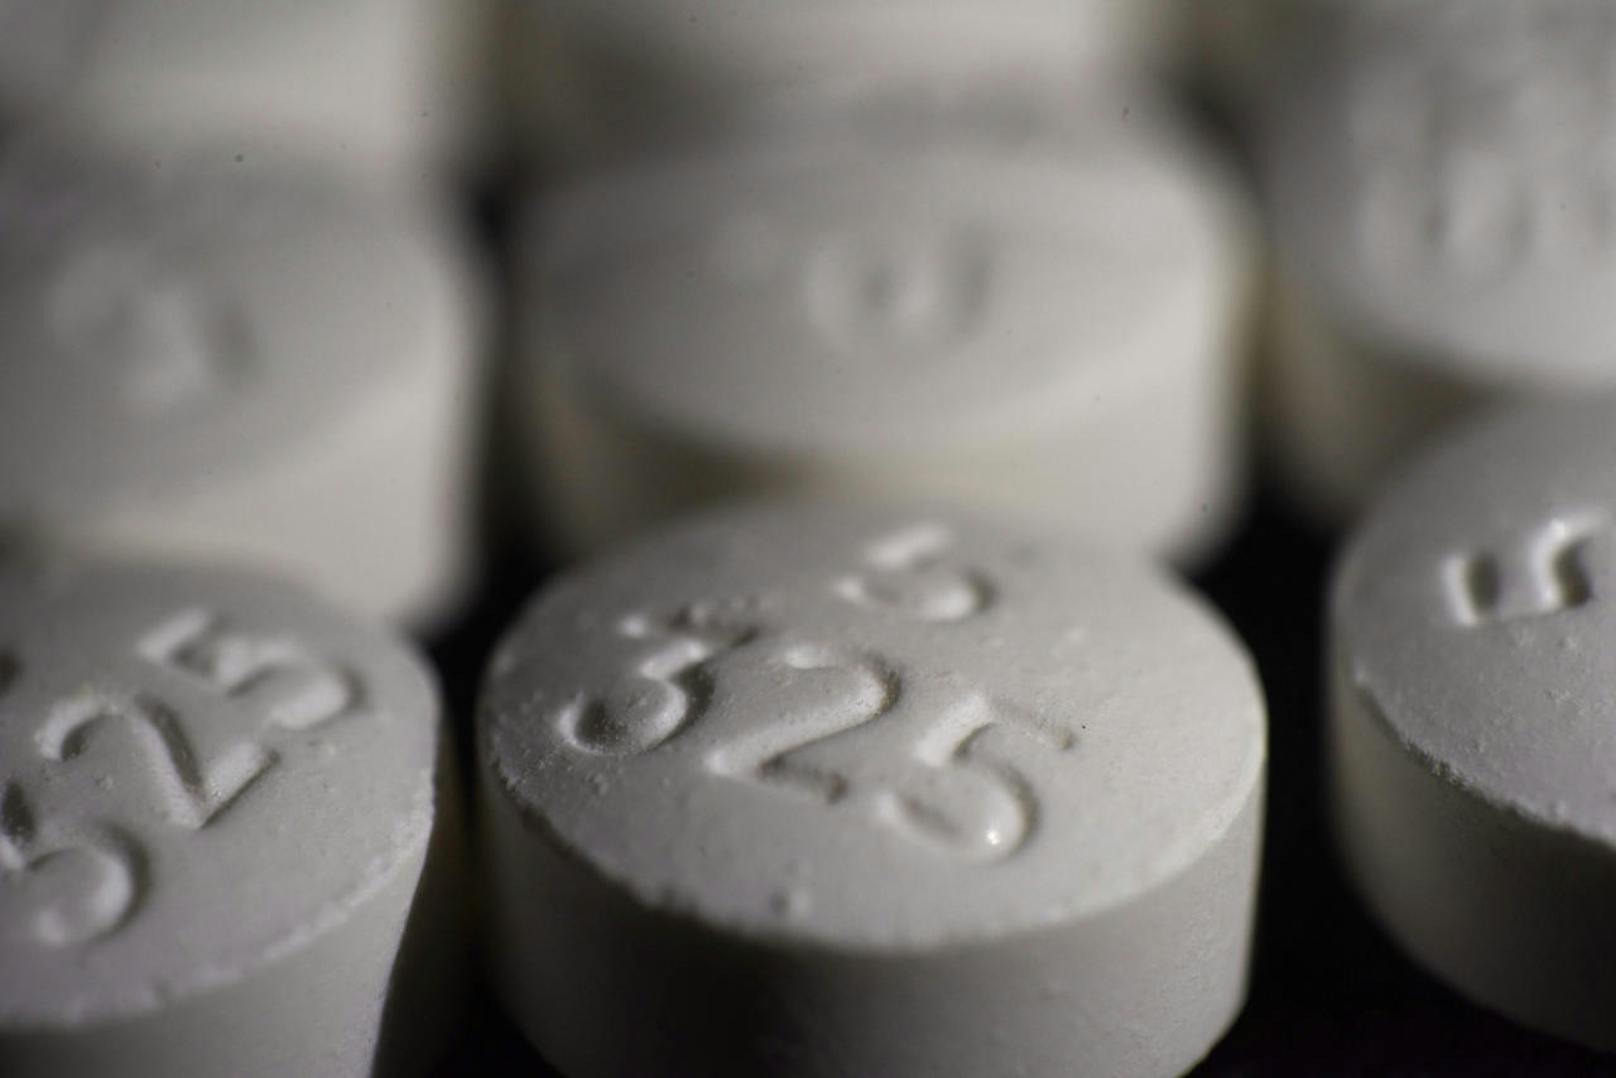 Eines der Opioide ist Oxycontin mit dem Wirkstoff Oxycodon als Grundlage. Es wurde 1996 mit einer aggressiven Marketingkampagne eingeführt und war fünf Jahre später das meistverkaufte Opioid.